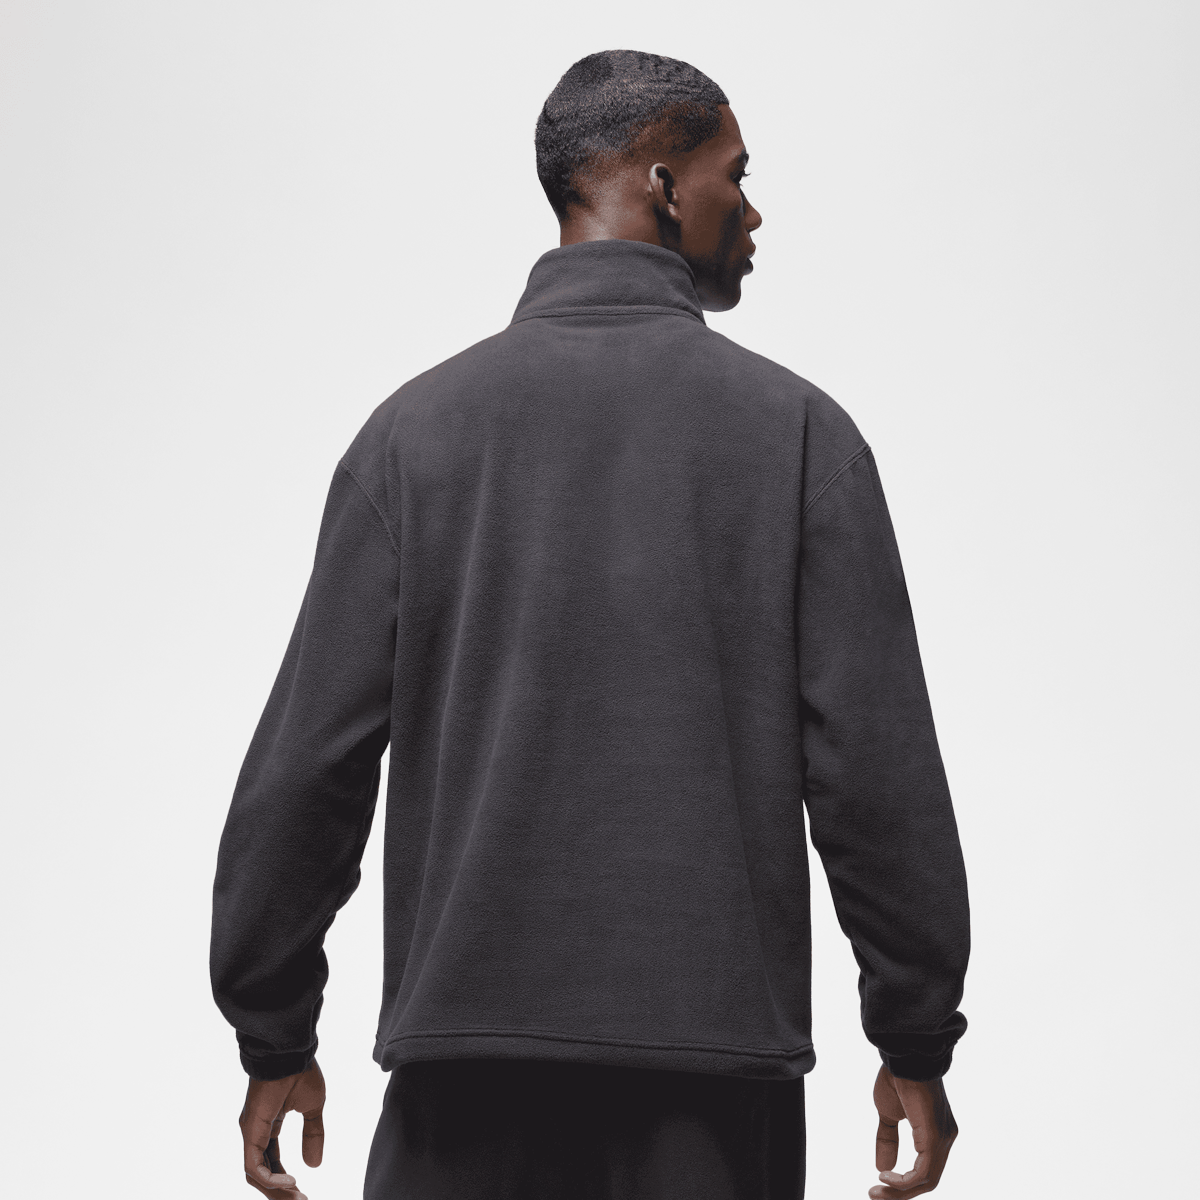 Jordan Essentials Statement Fleece Winter Half-zip Hoodies Kleding black maat: S beschikbare maaten:S M L XL